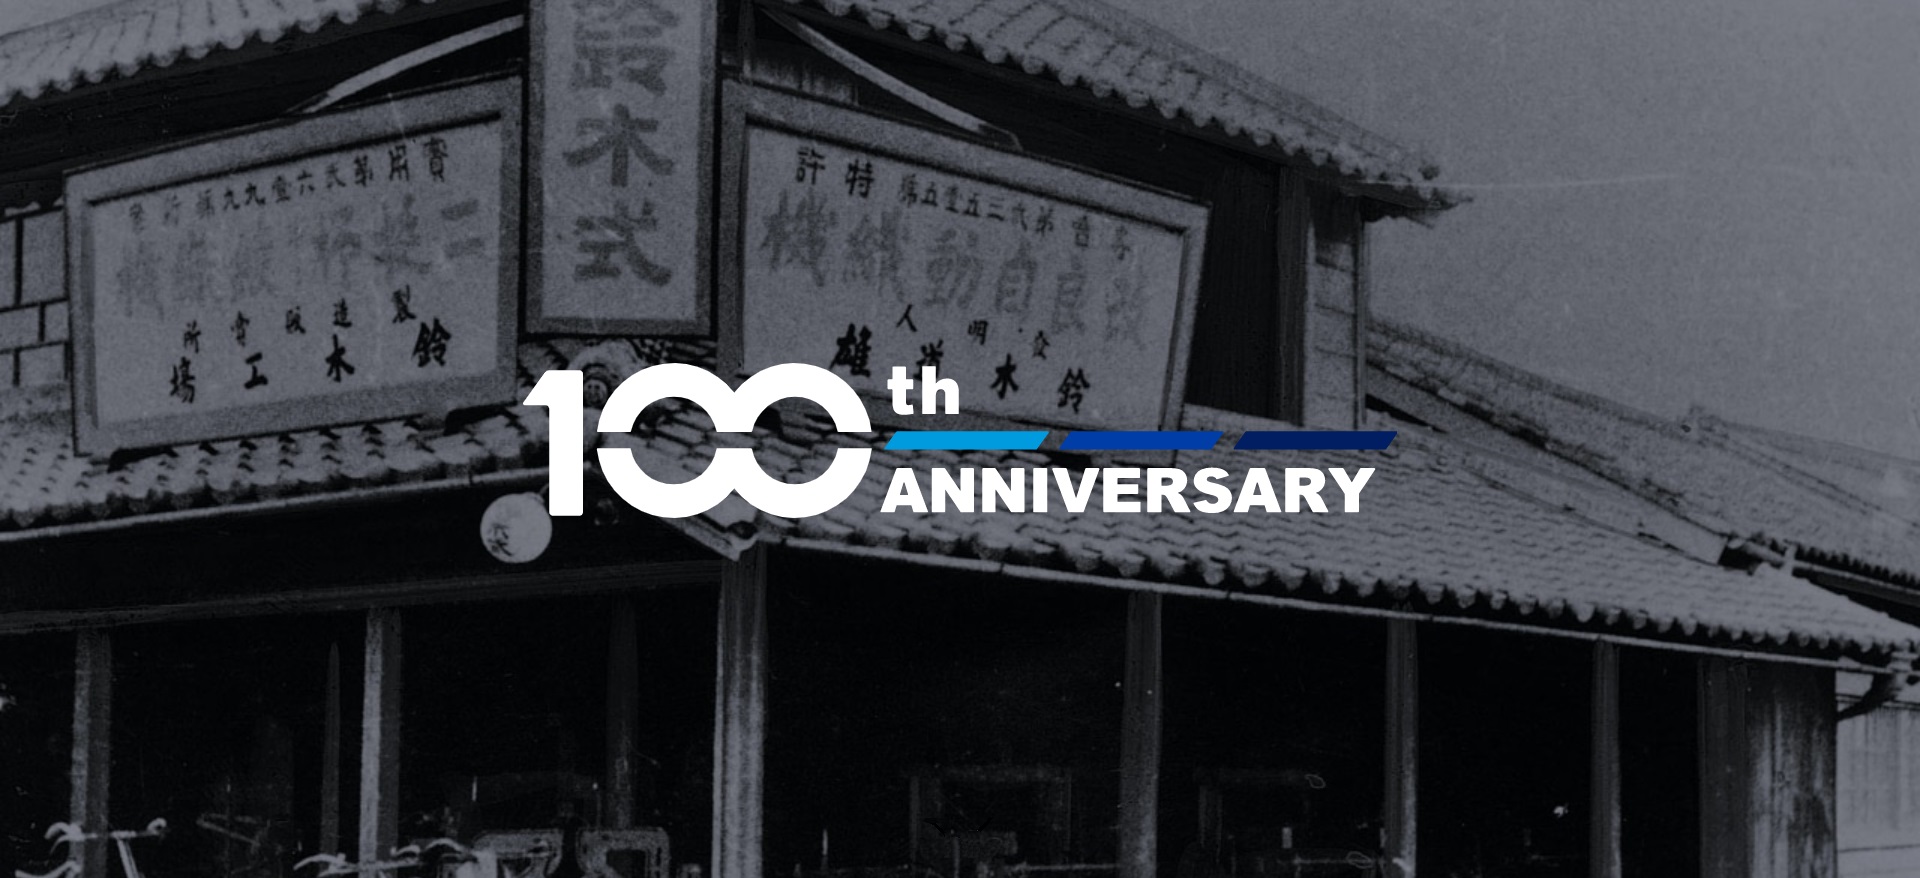 スズキが創立100周年。歴史を紡ぐ「100周年記念サイト」開設 - Car Watch